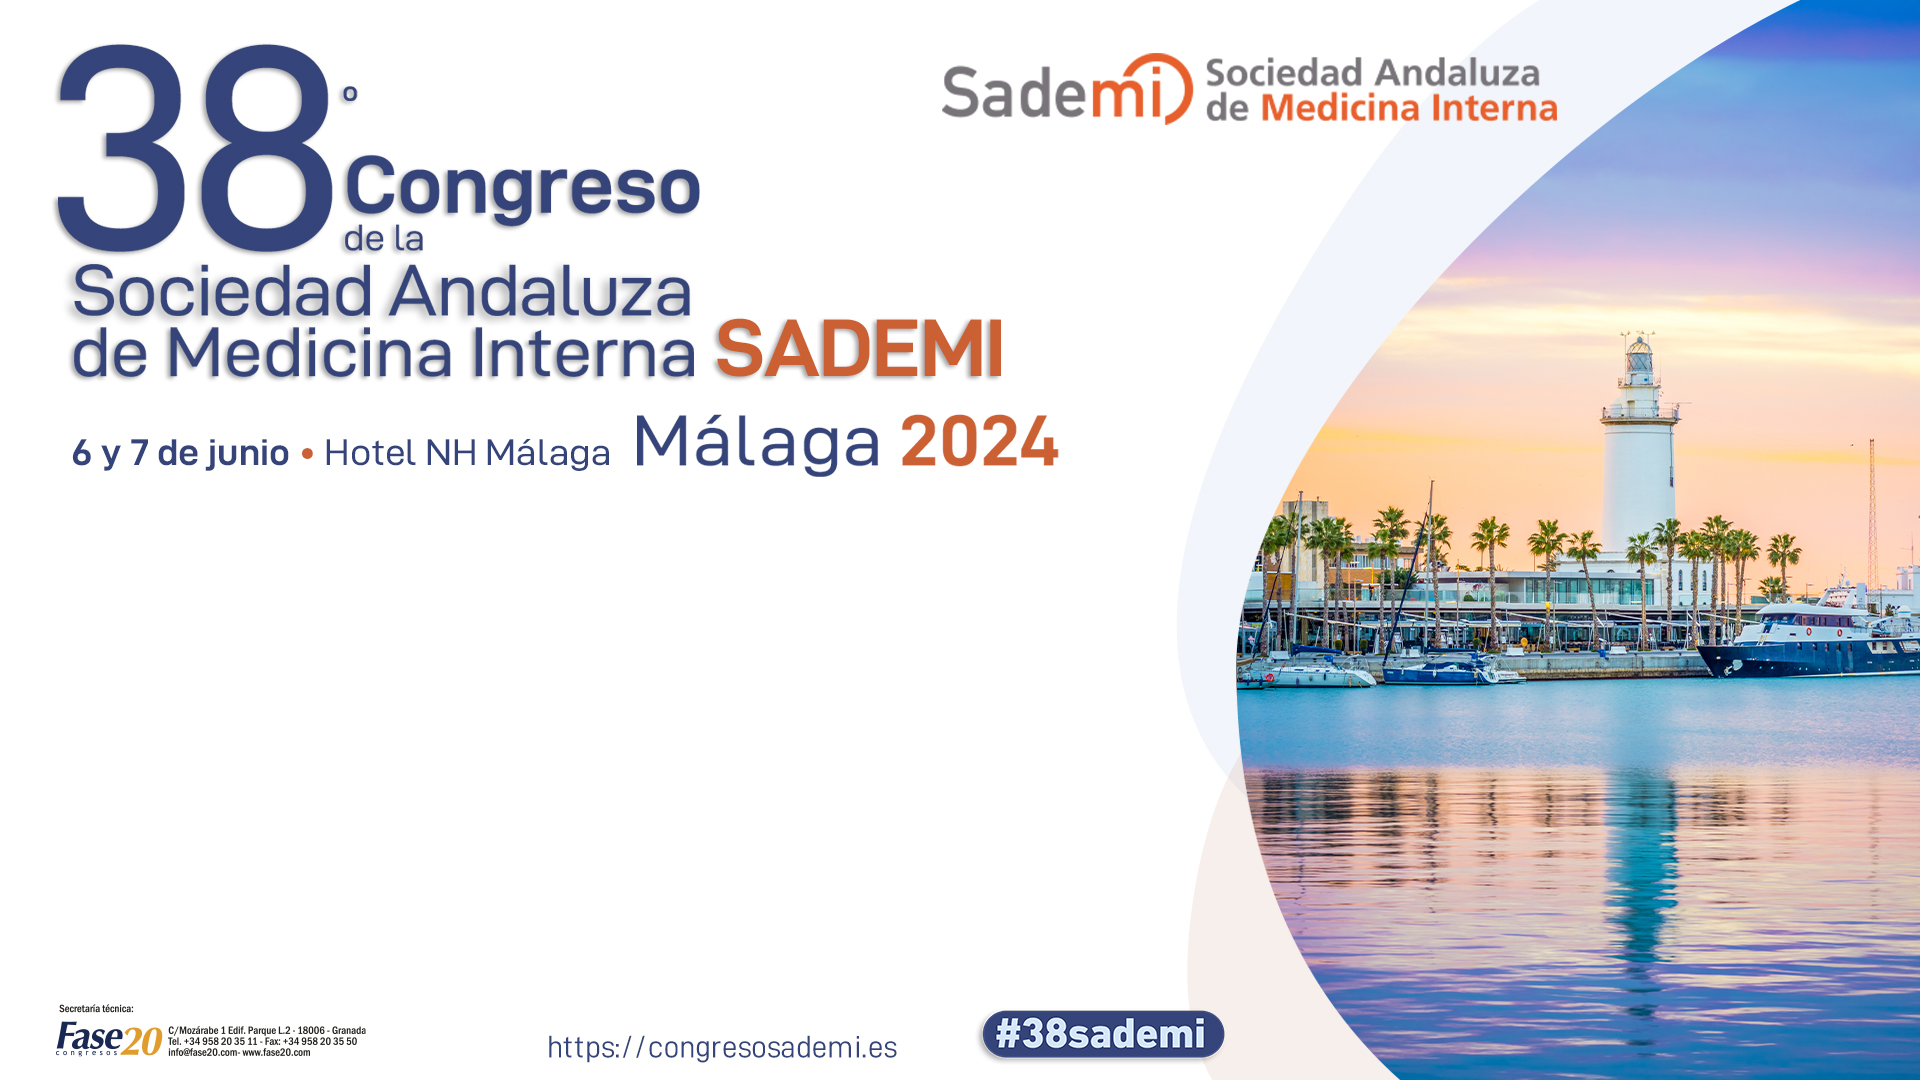 38º CONGRESO DE LA SOCIEDAD ANDALUZA DE MEDICINA INTERNA (SADEMI) MALAGA 2024 - Plantilla